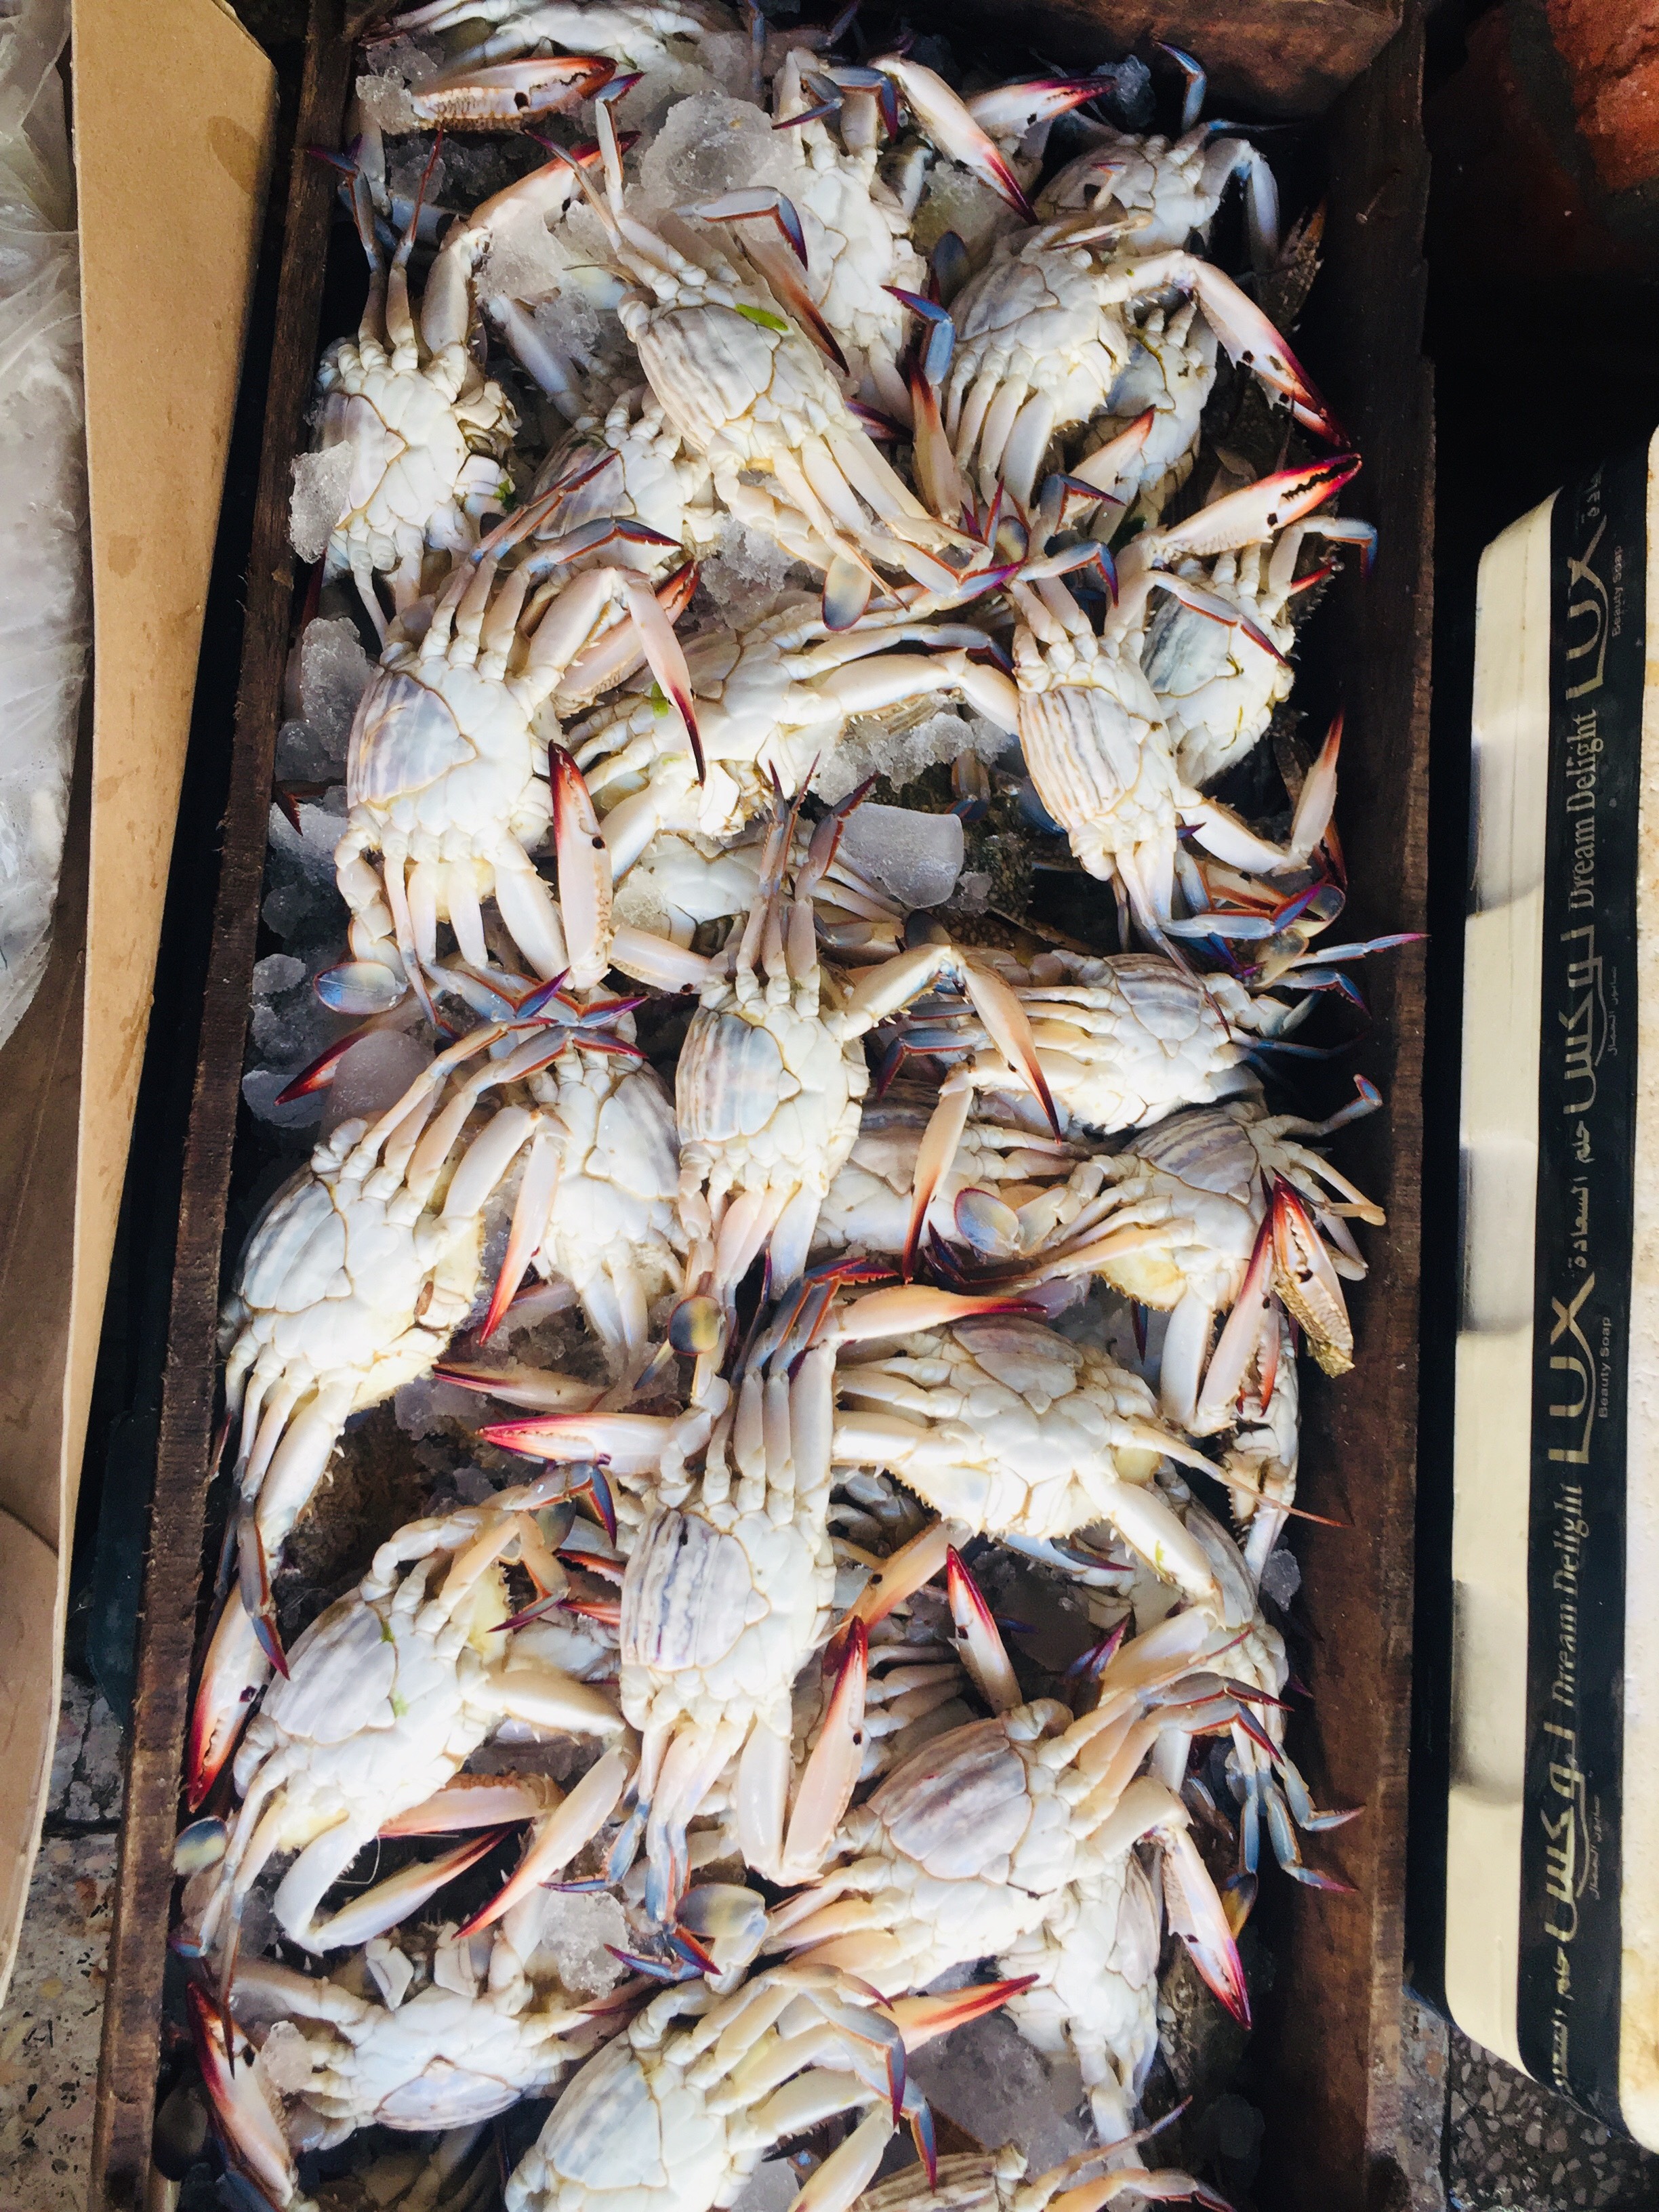  سوق بورسعيد للأسماك بمحافظة الإسماعيلية (11)